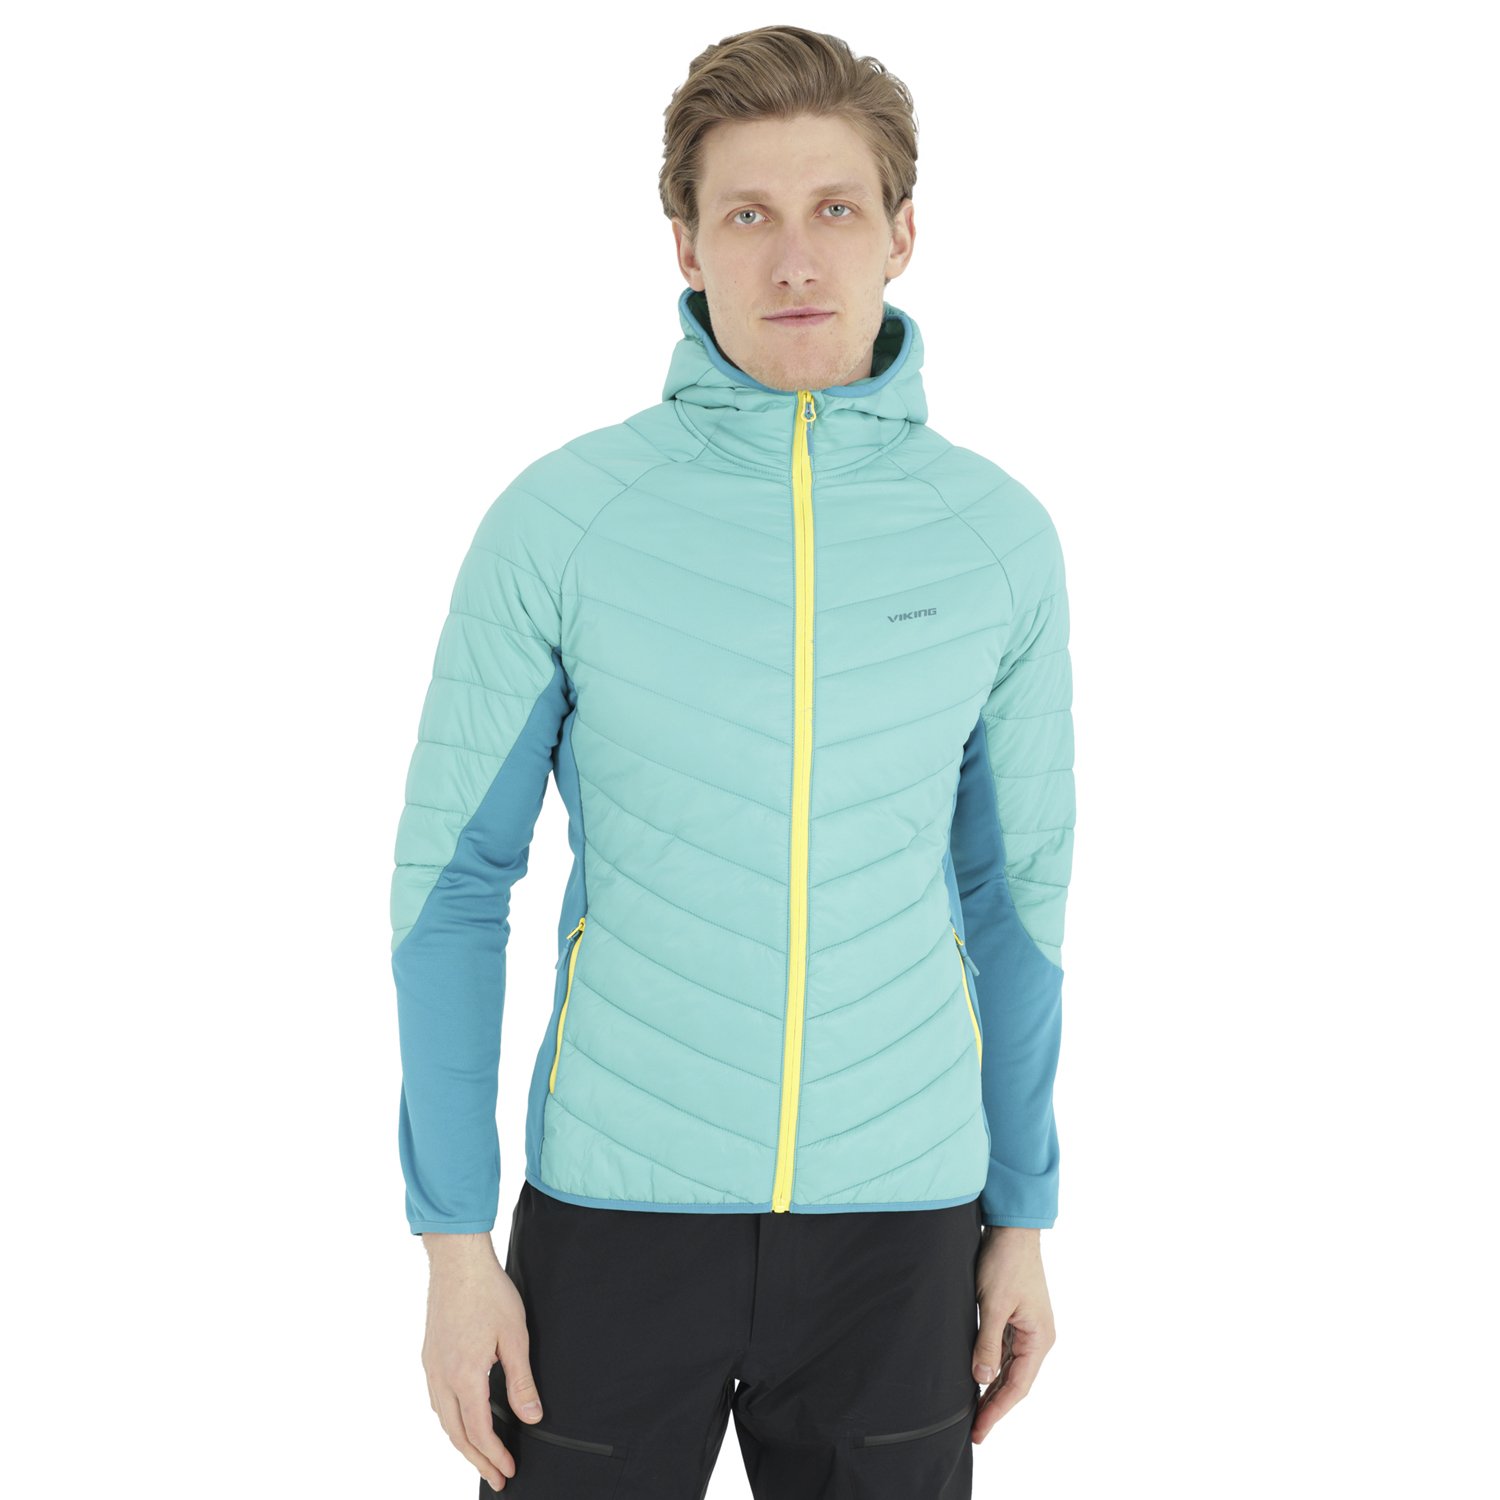 Куртка VIKING Becky Warm Pro Turquise, для активного отдыха, женский, голубой/желтый, 2022-23, 750/2